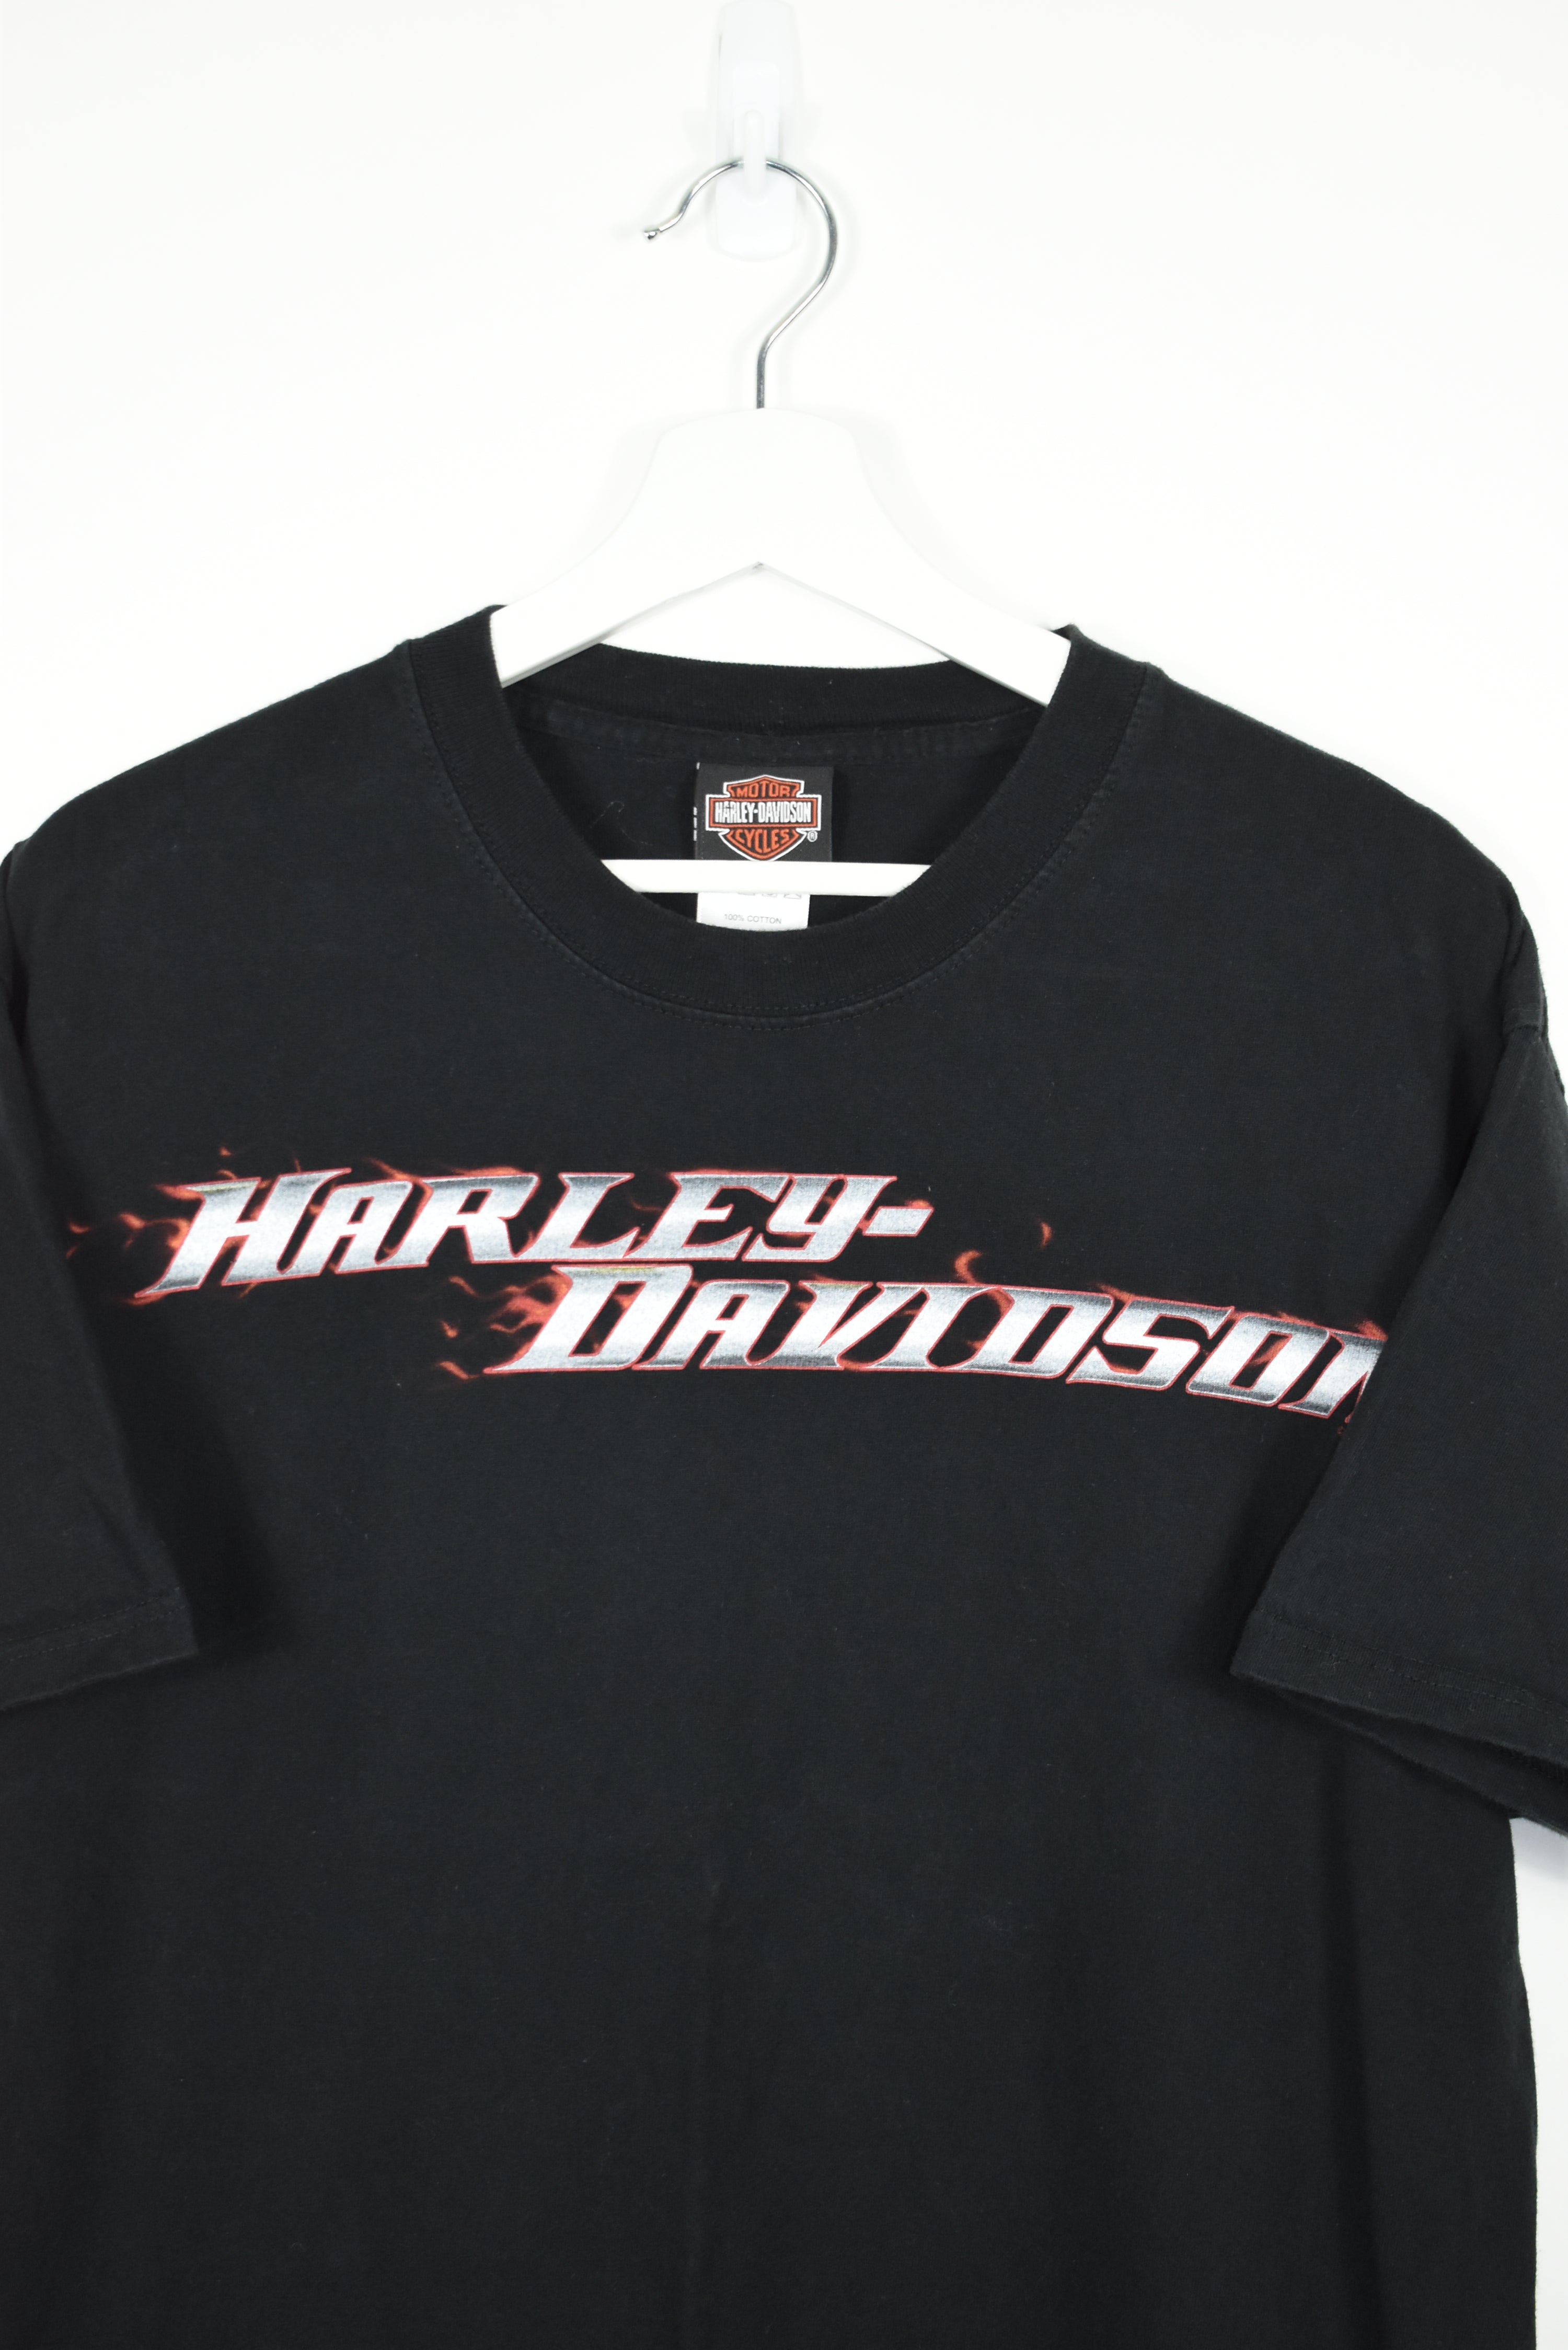 Vintage Harley Davidson T Shirt Large